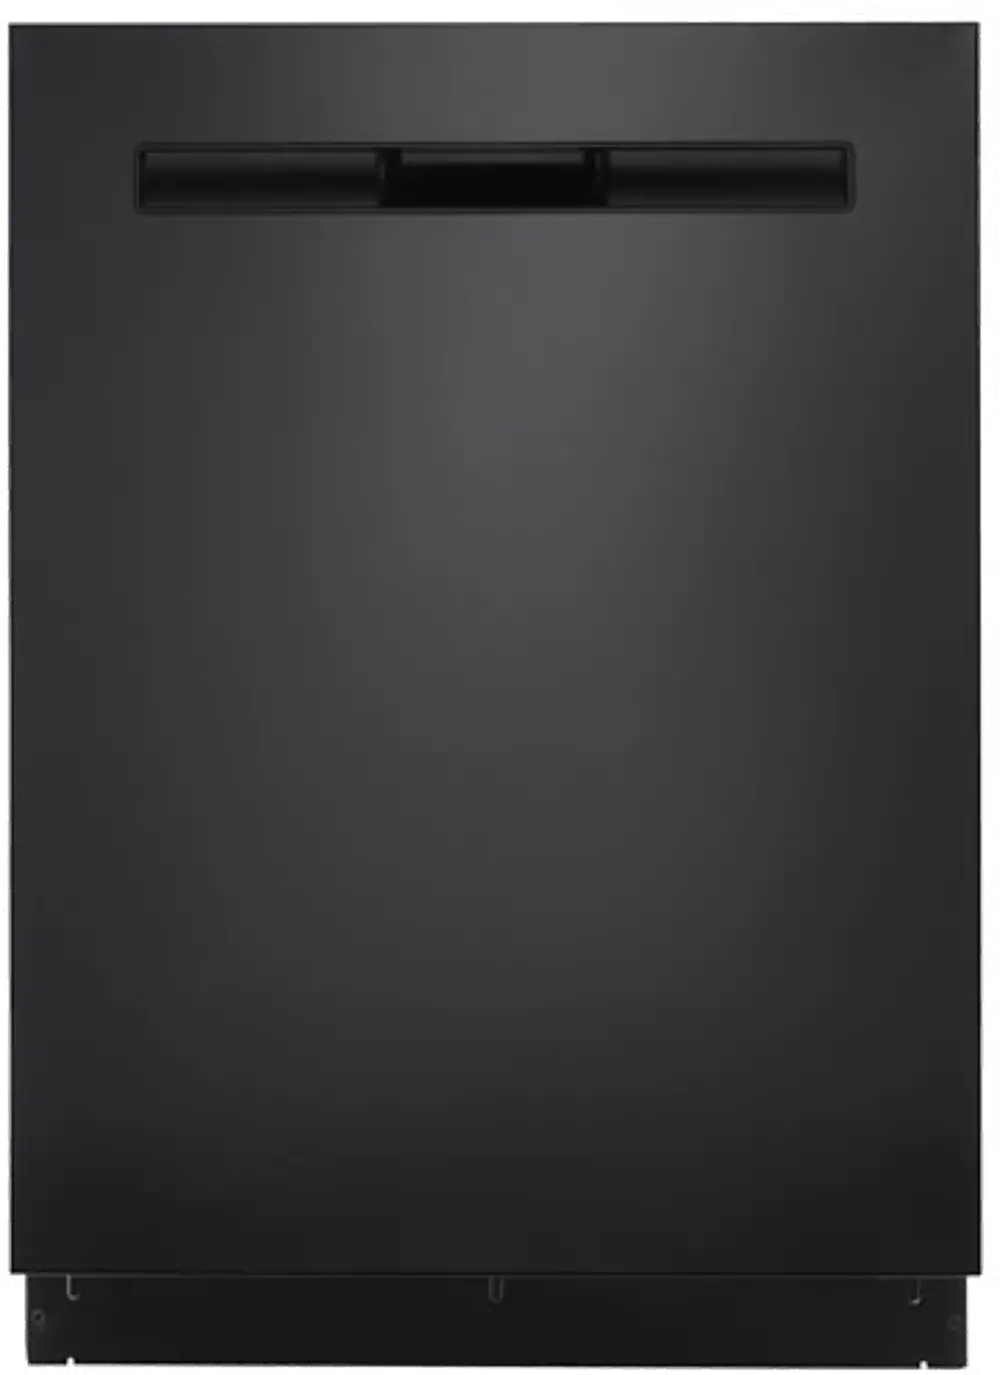 MDB8989SHB Maytag Dishwasher - Black-1